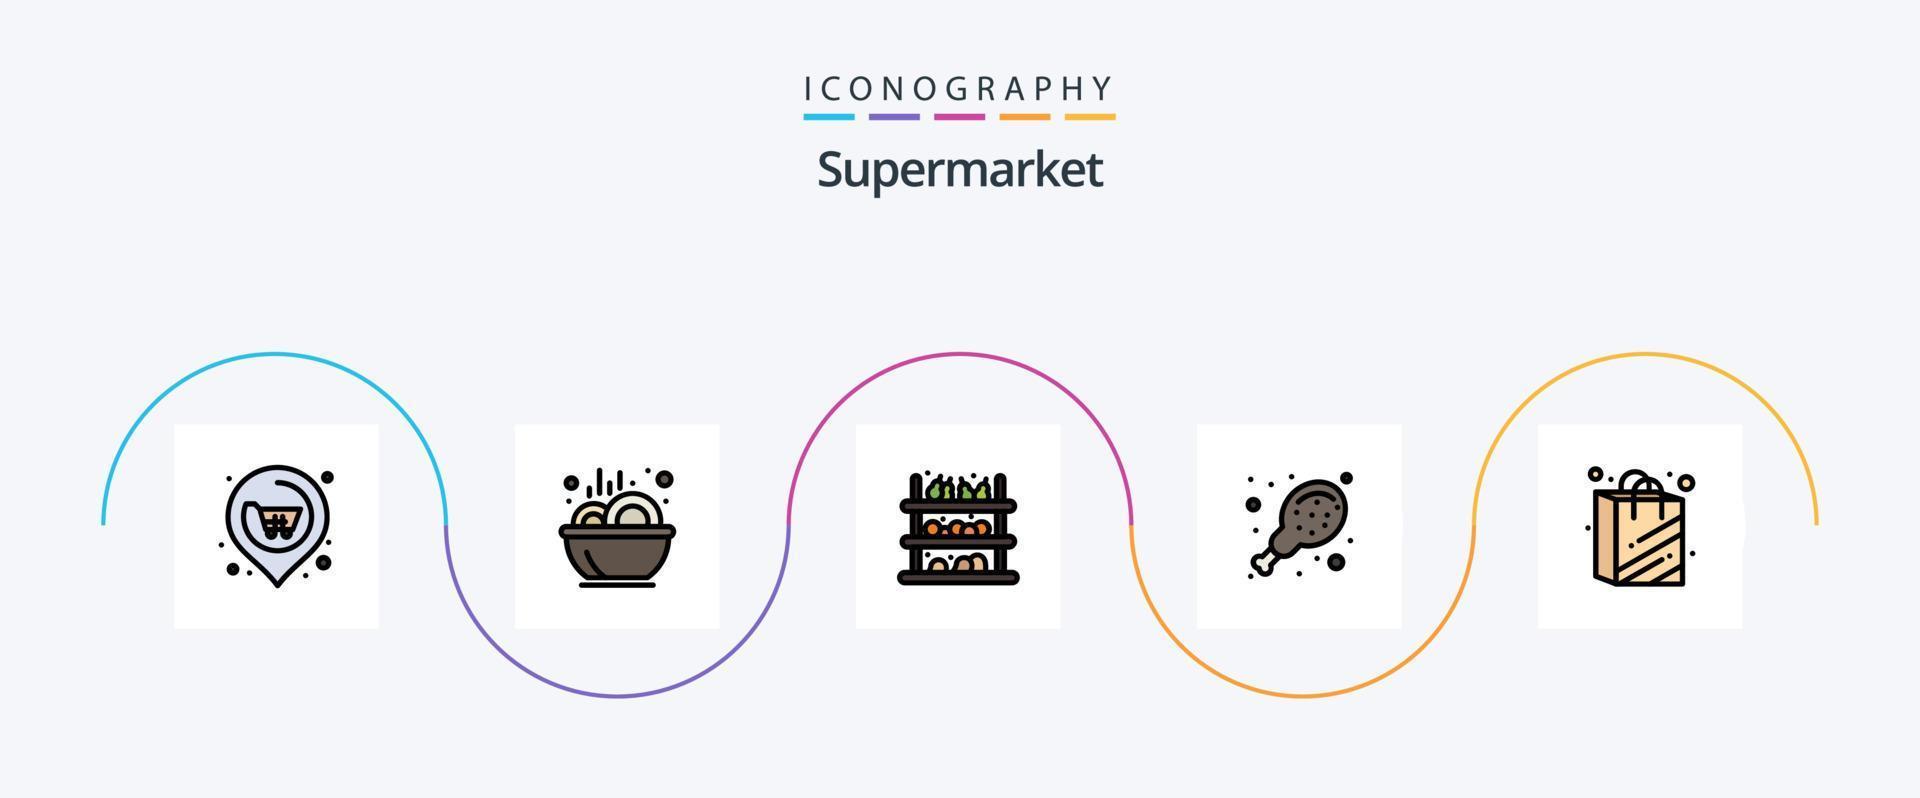 la línea de supermercado llenó el paquete de iconos planos 5 que incluye el supermercado. bolso. tienda de comestibles. supermercado. pollo vector